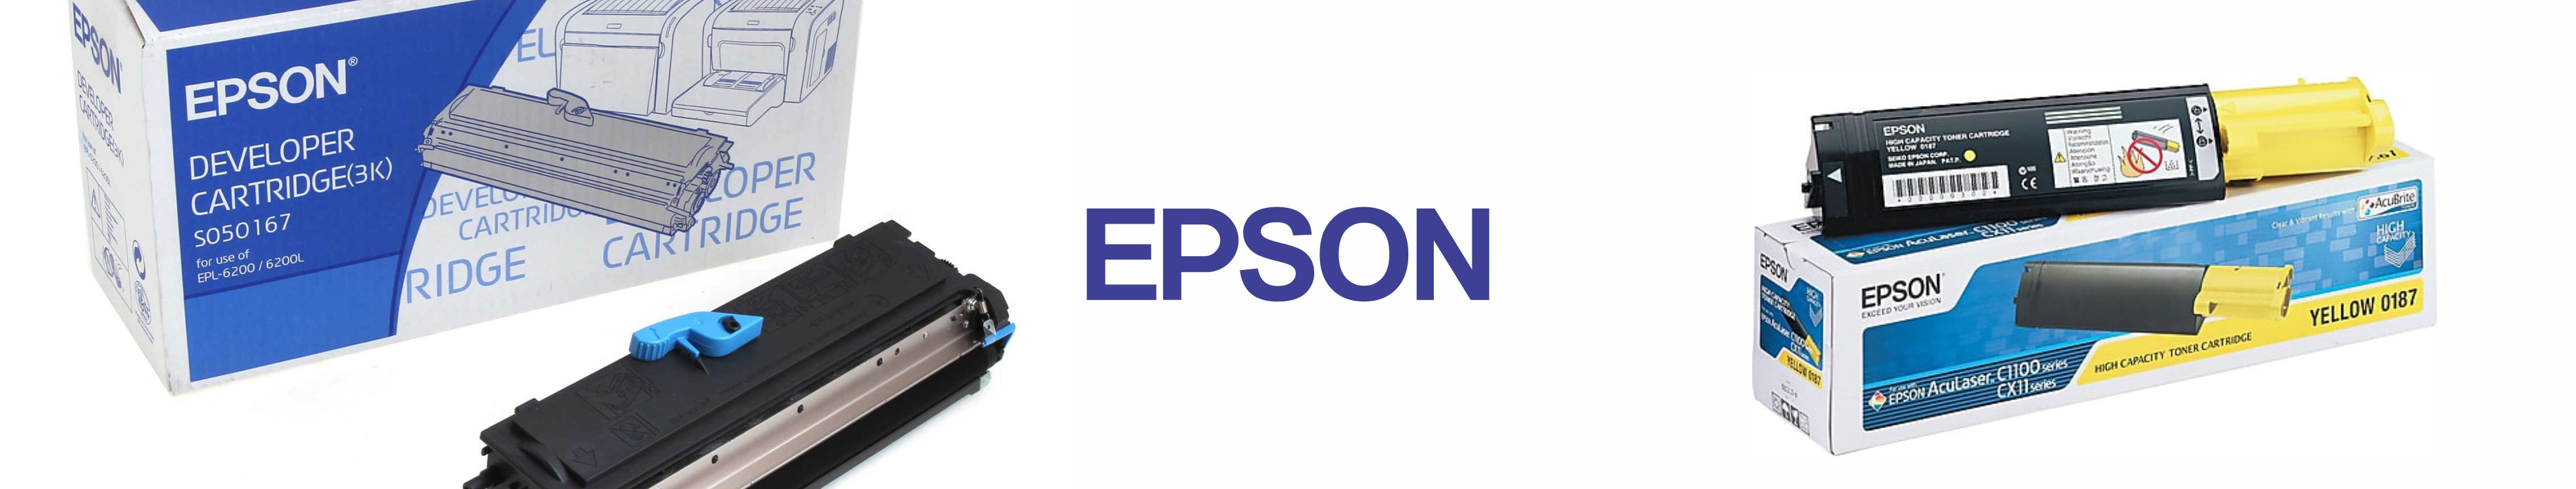 Epson Toners Cartridges